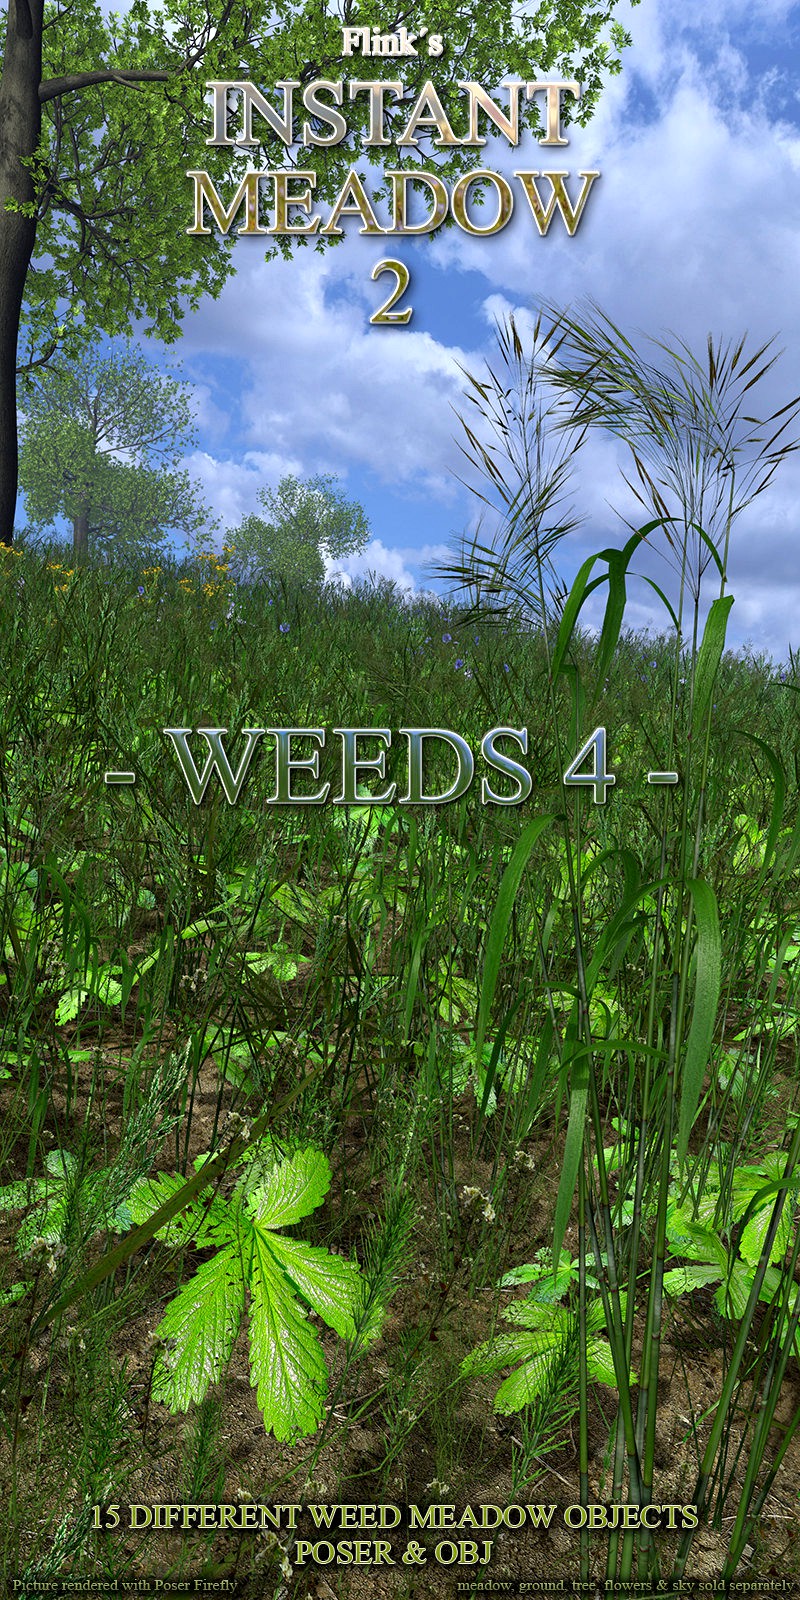 Flinks Instant Meadow 2 - Weeds 4